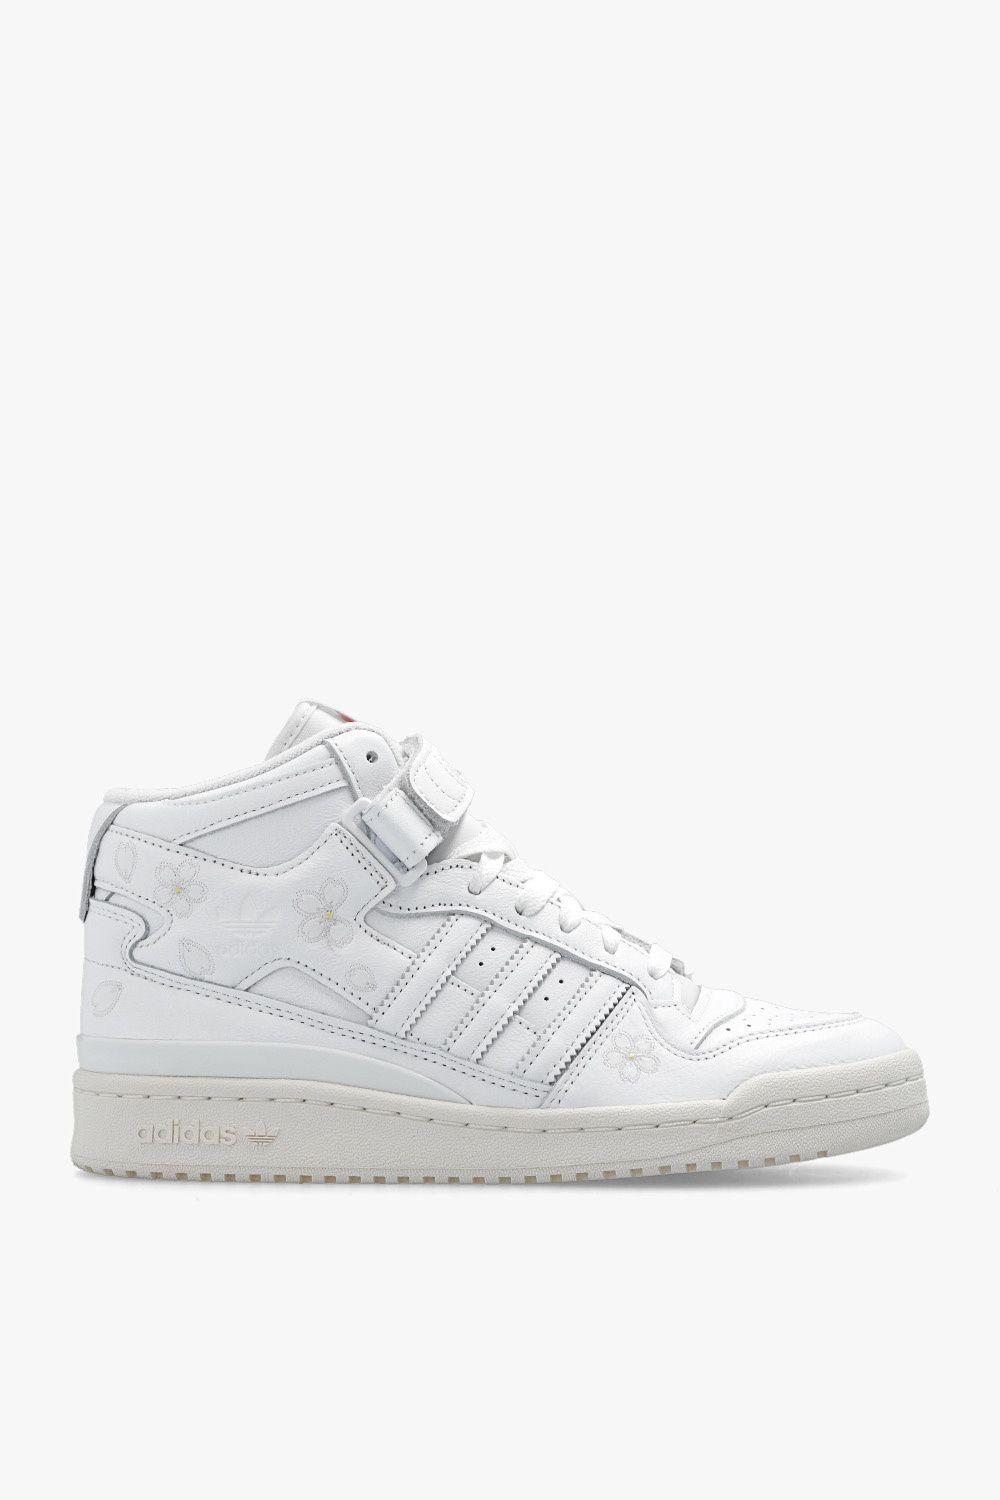 adidas Originals 'forum Mid Hanami' Sneakers in White | Lyst